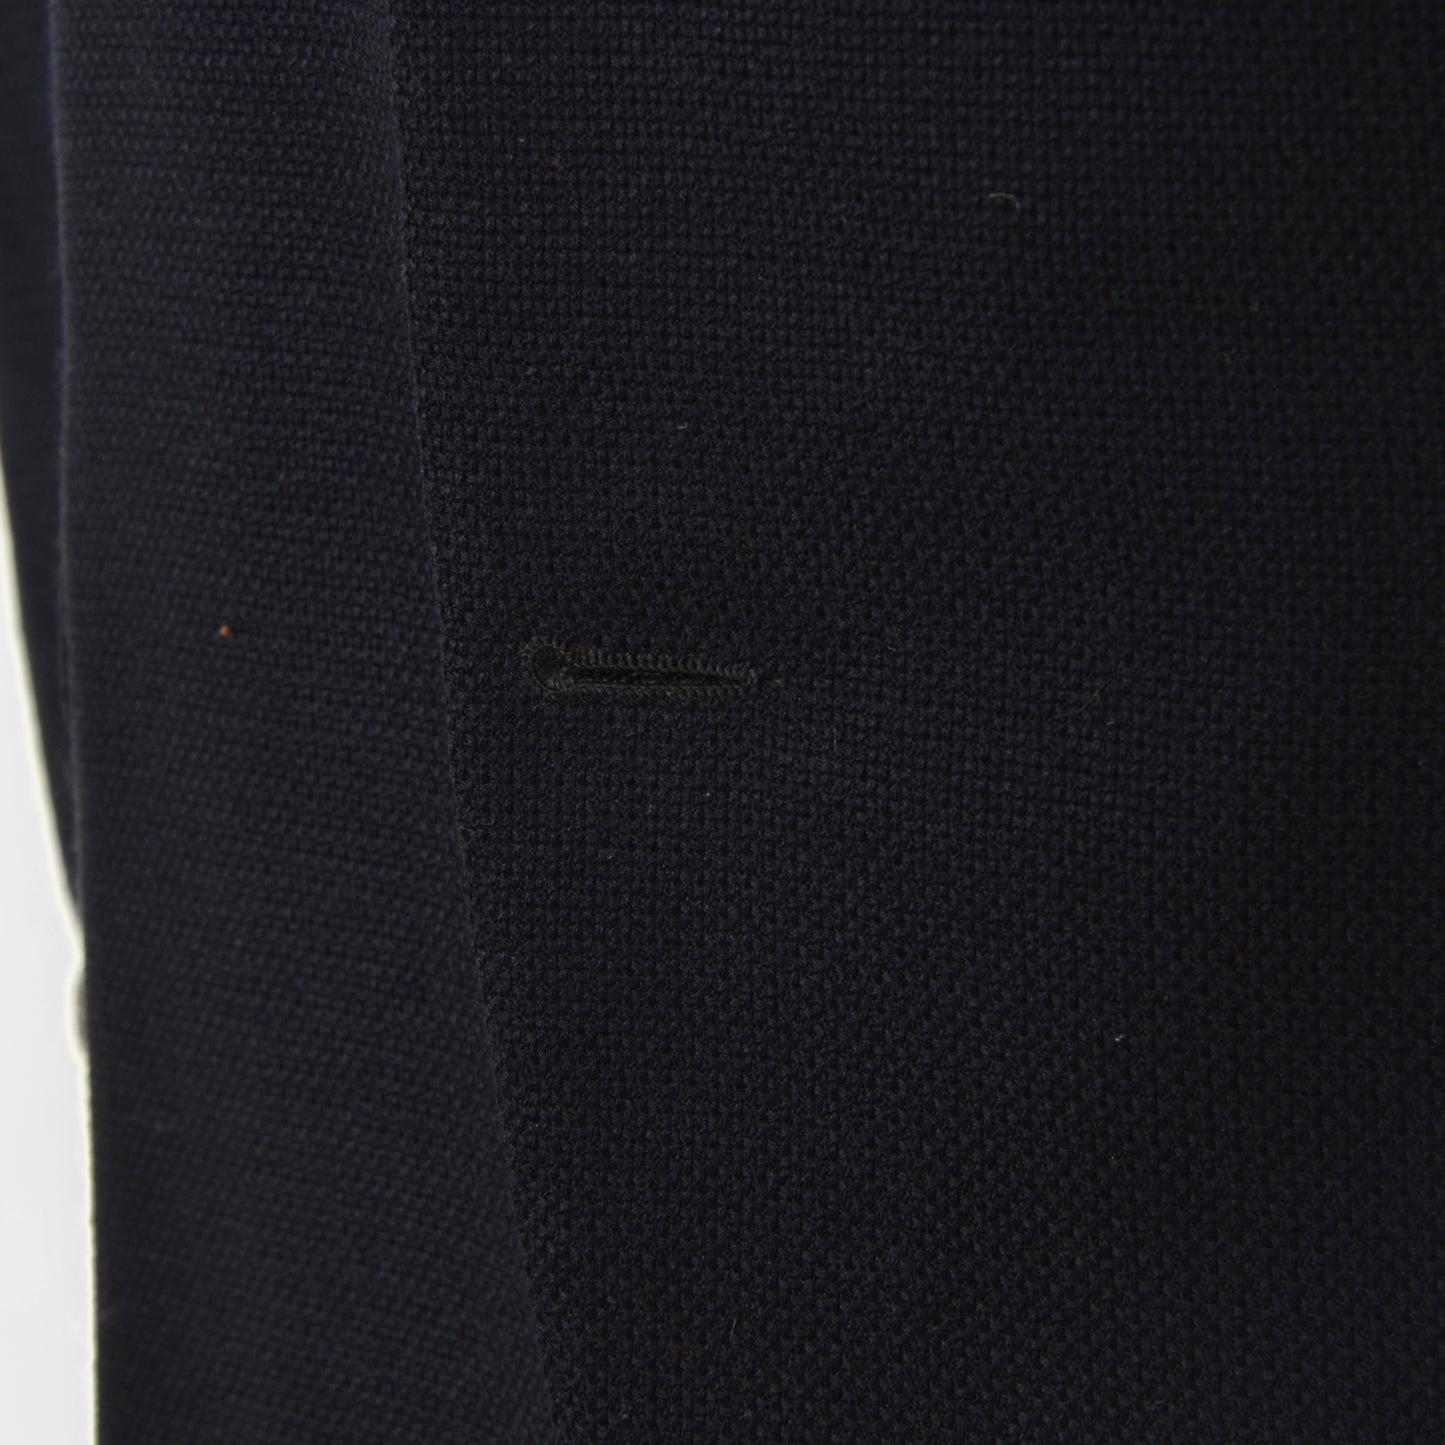 Bespoke/Handmade Jacket/Blazer - Navy